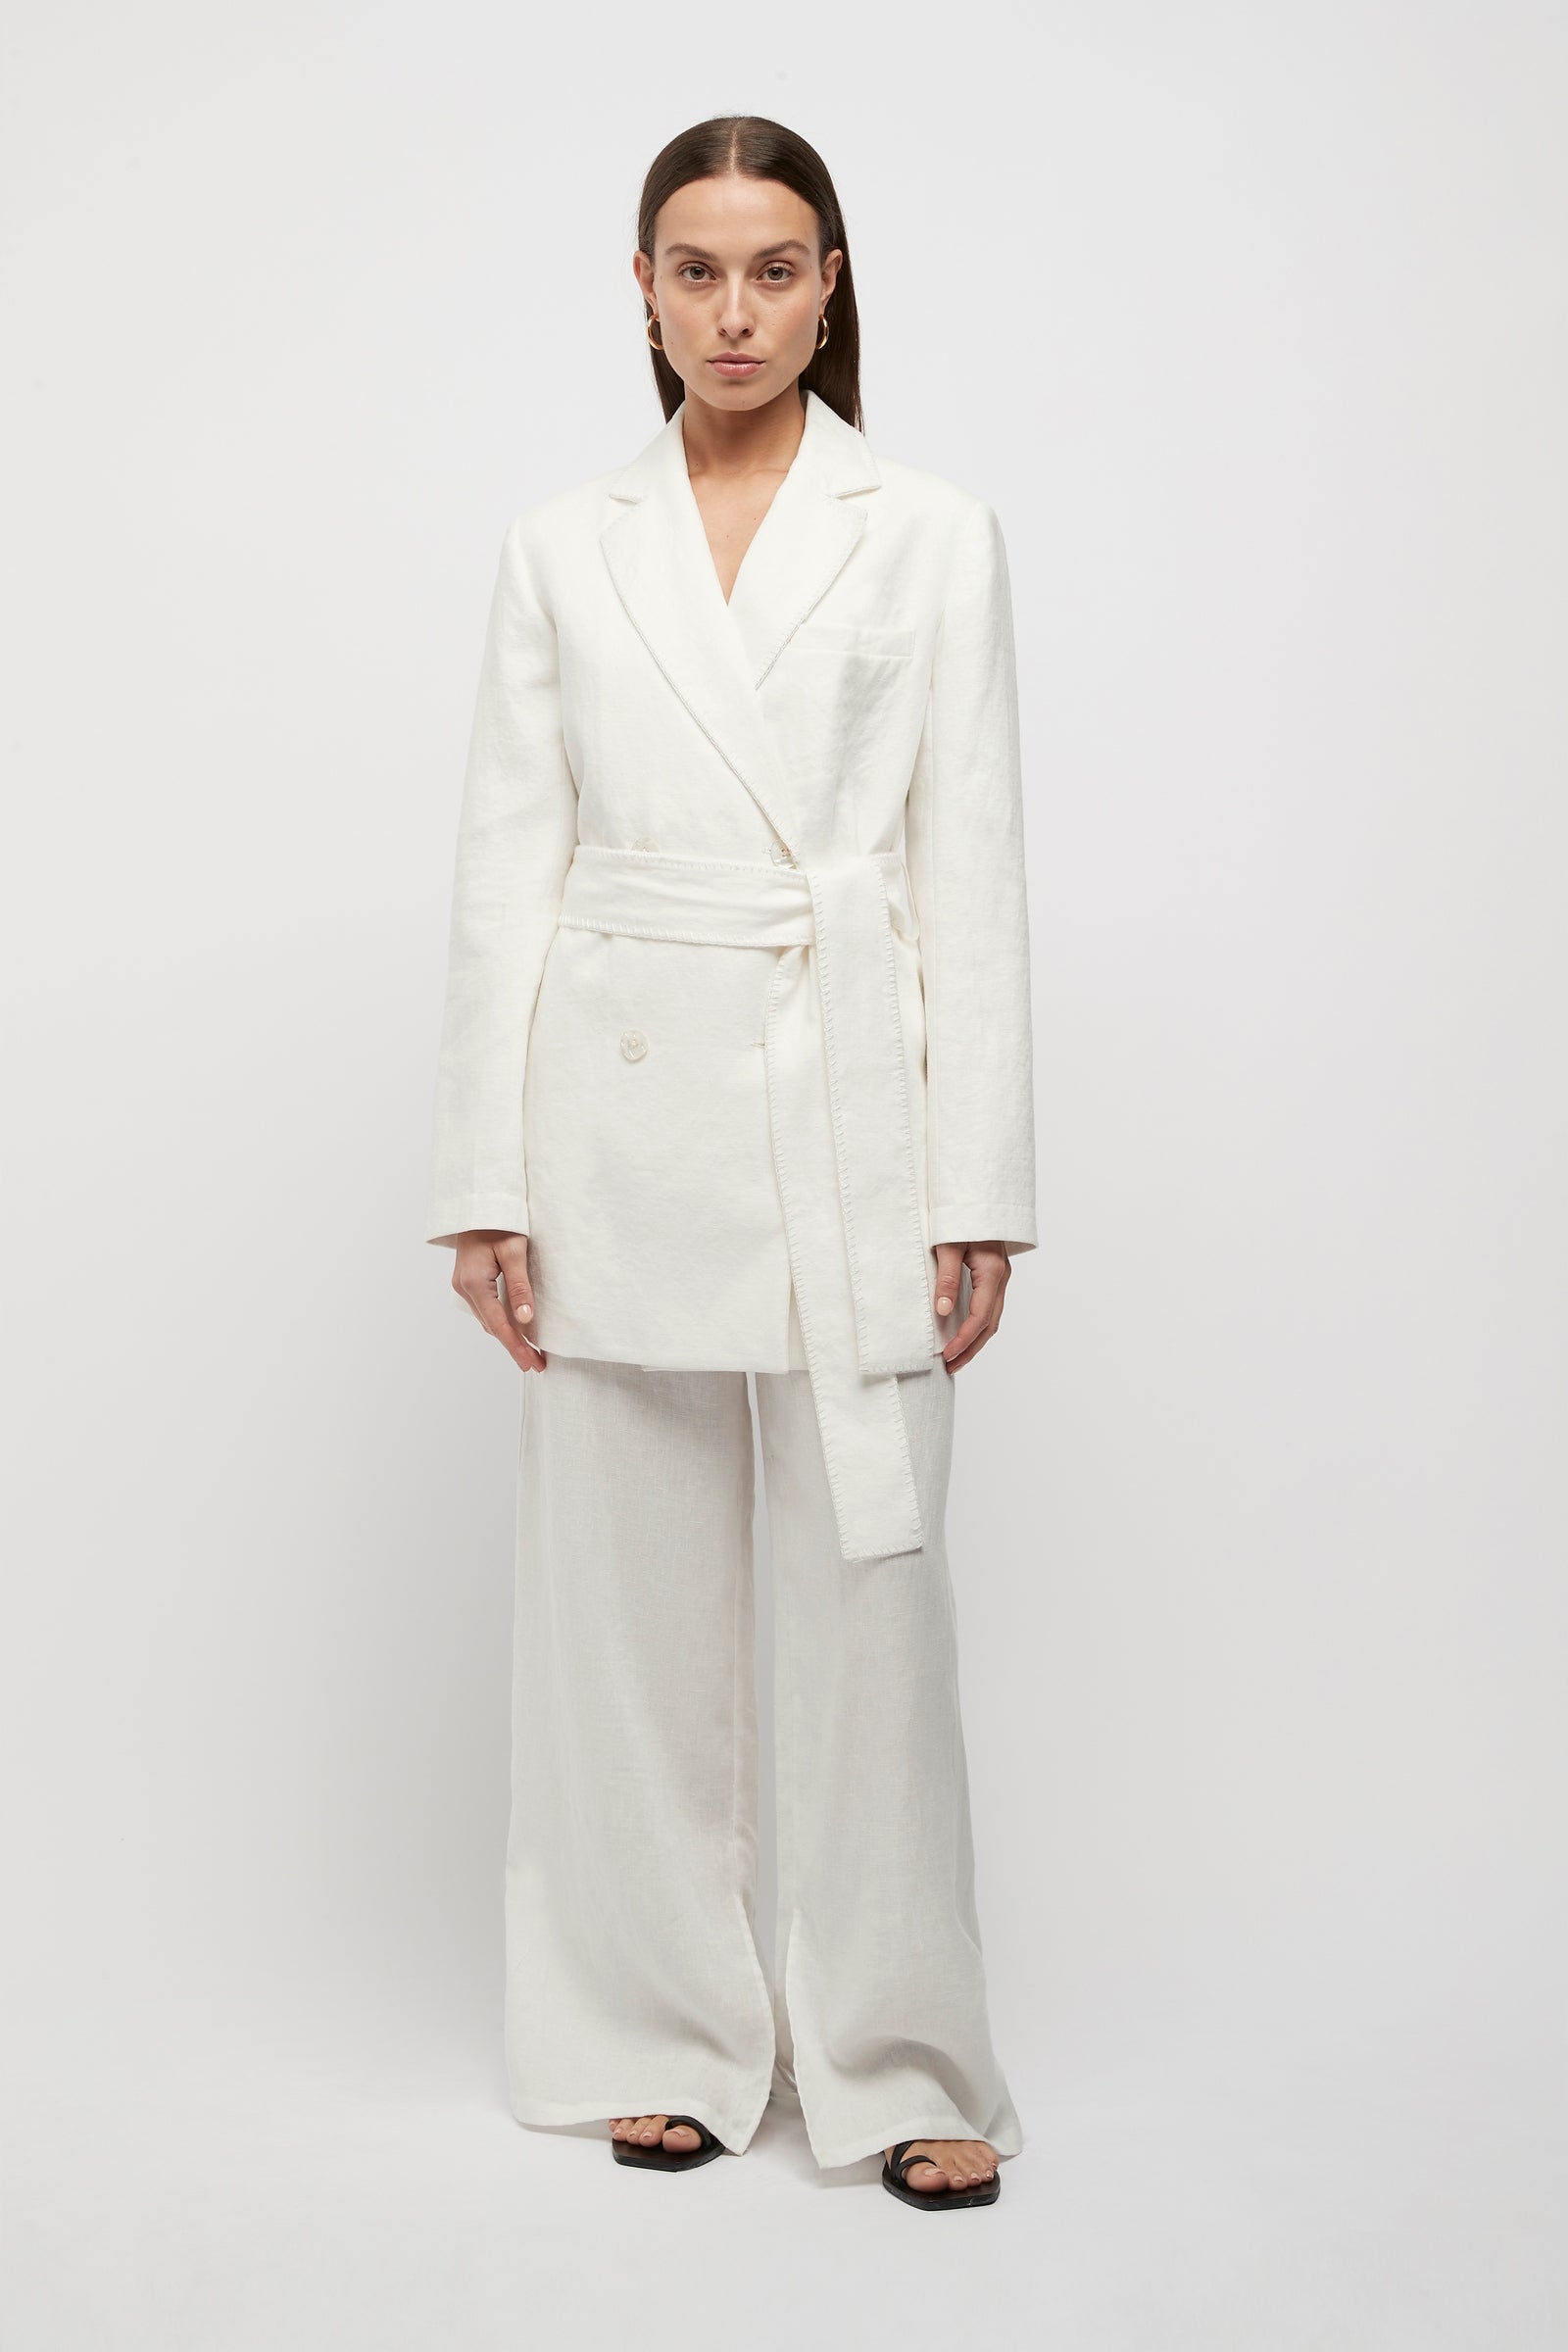 Hayworth Blanket Stitch Linen Blazer in White